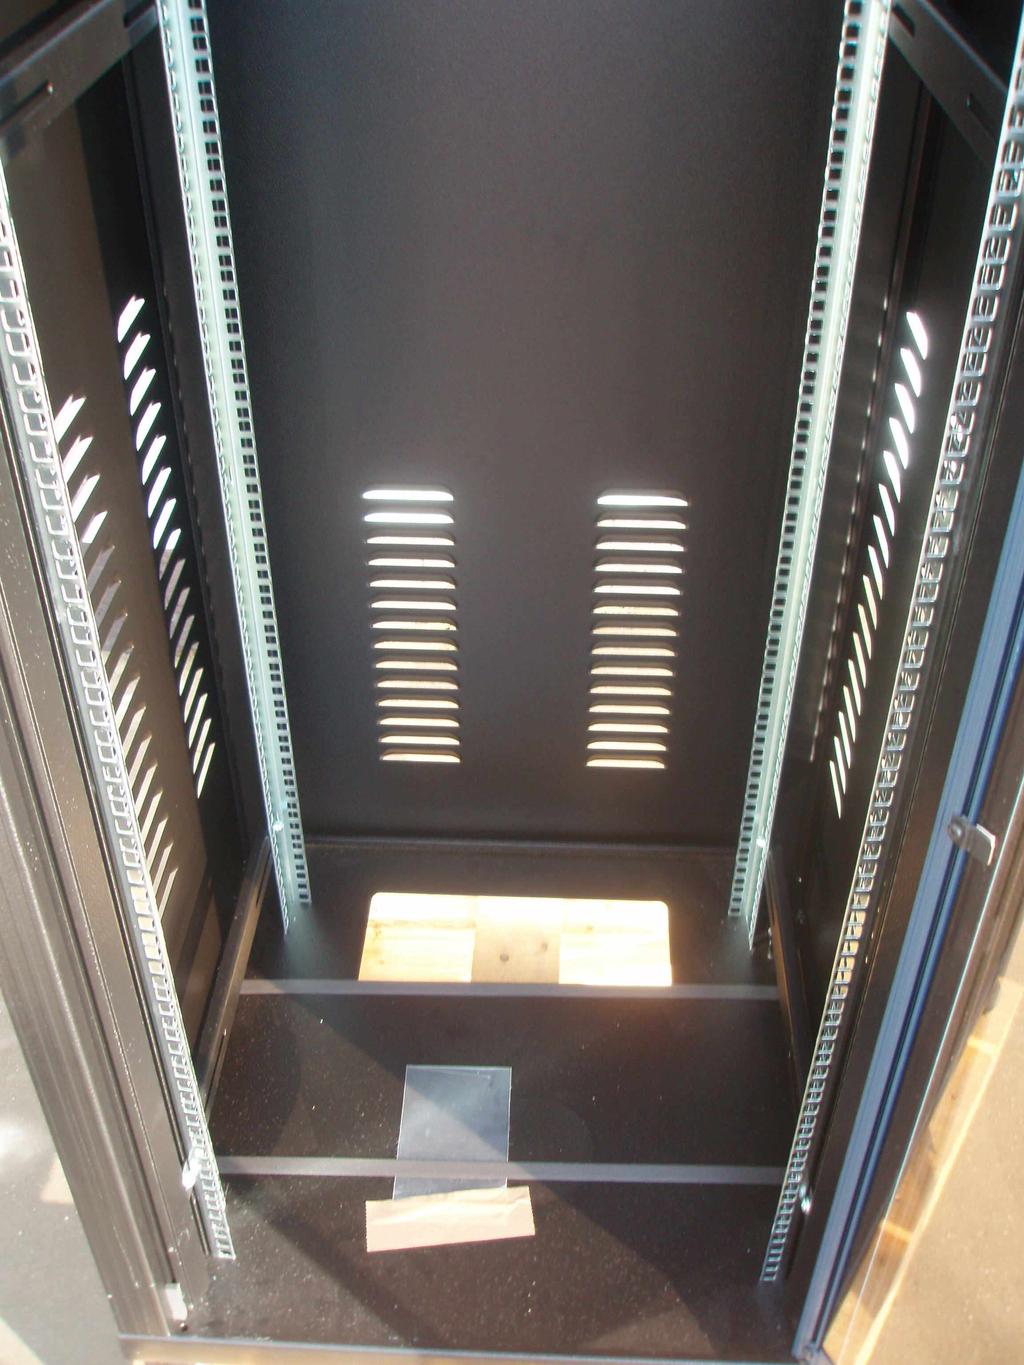 SERVER STATIONS metal shelves and uprights also in black colour * 1,2m side server station desktop + 3 metal shelves 1.